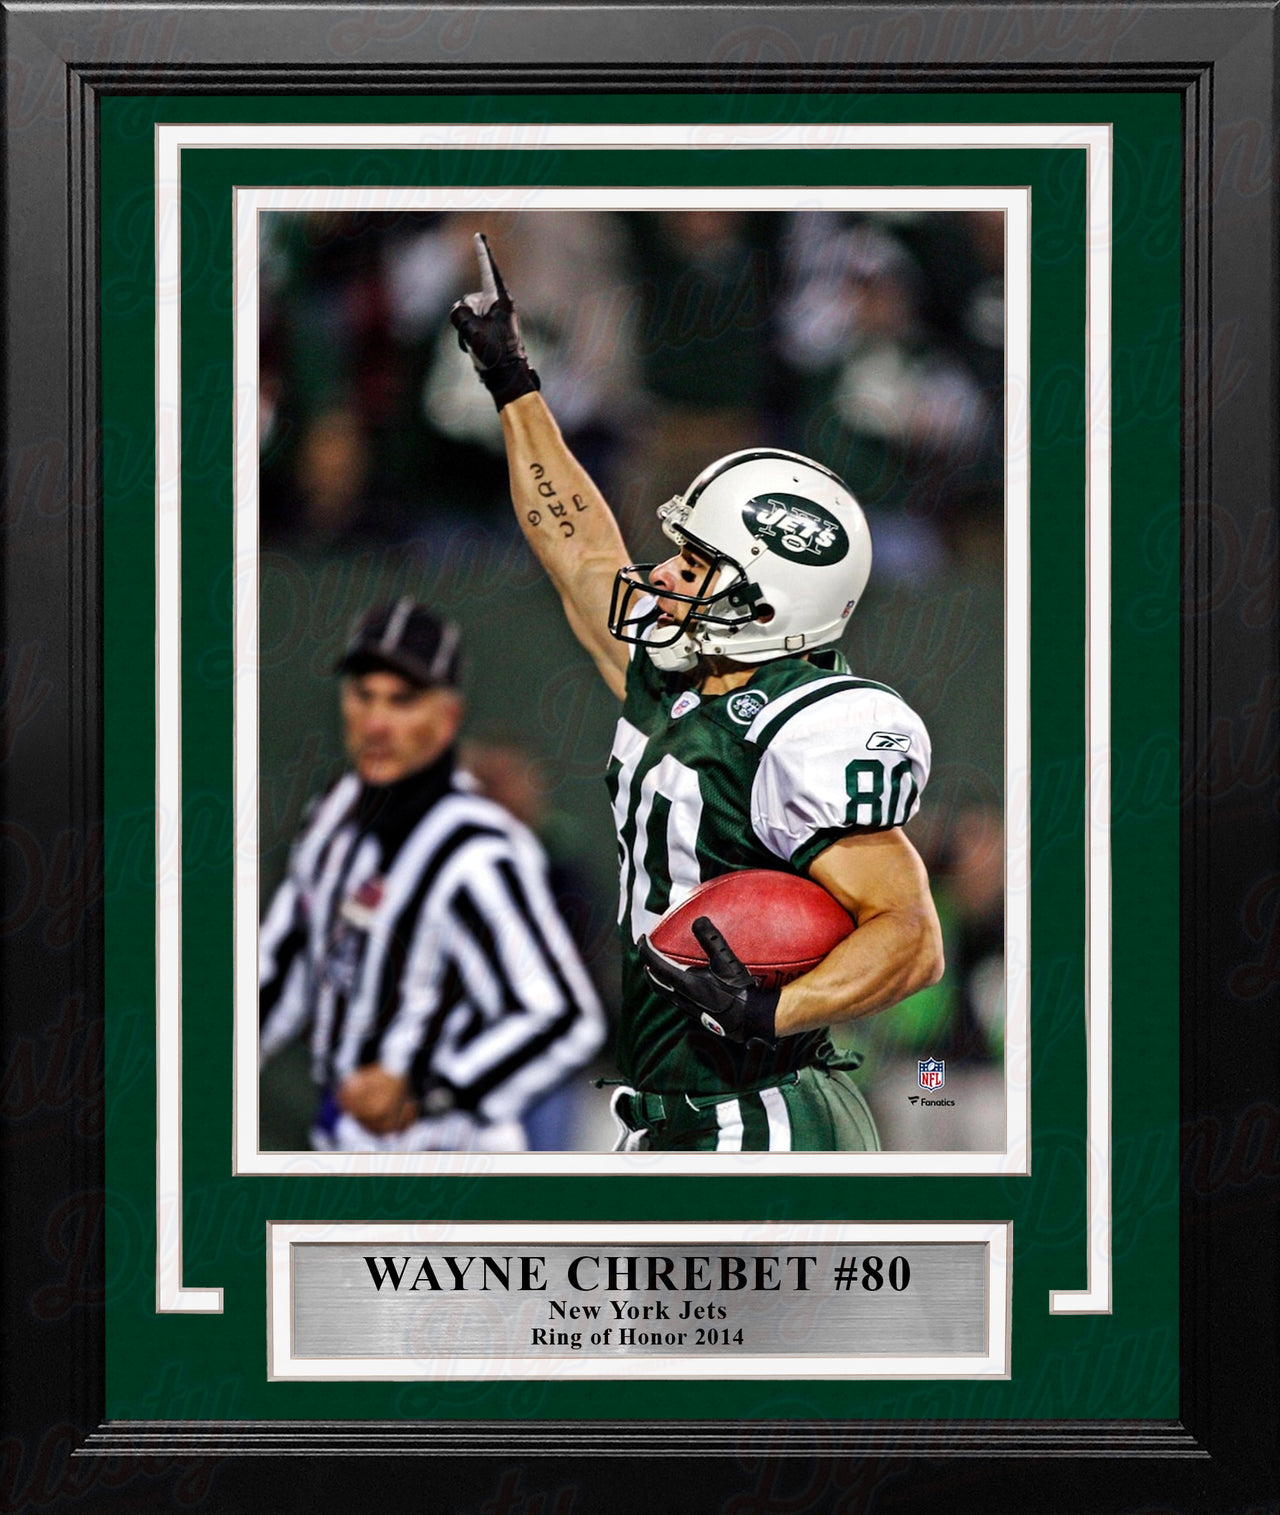 Wayne Chrebet Celebration New York Jets 8" x 10" Framed Football Photo - Dynasty Sports & Framing 